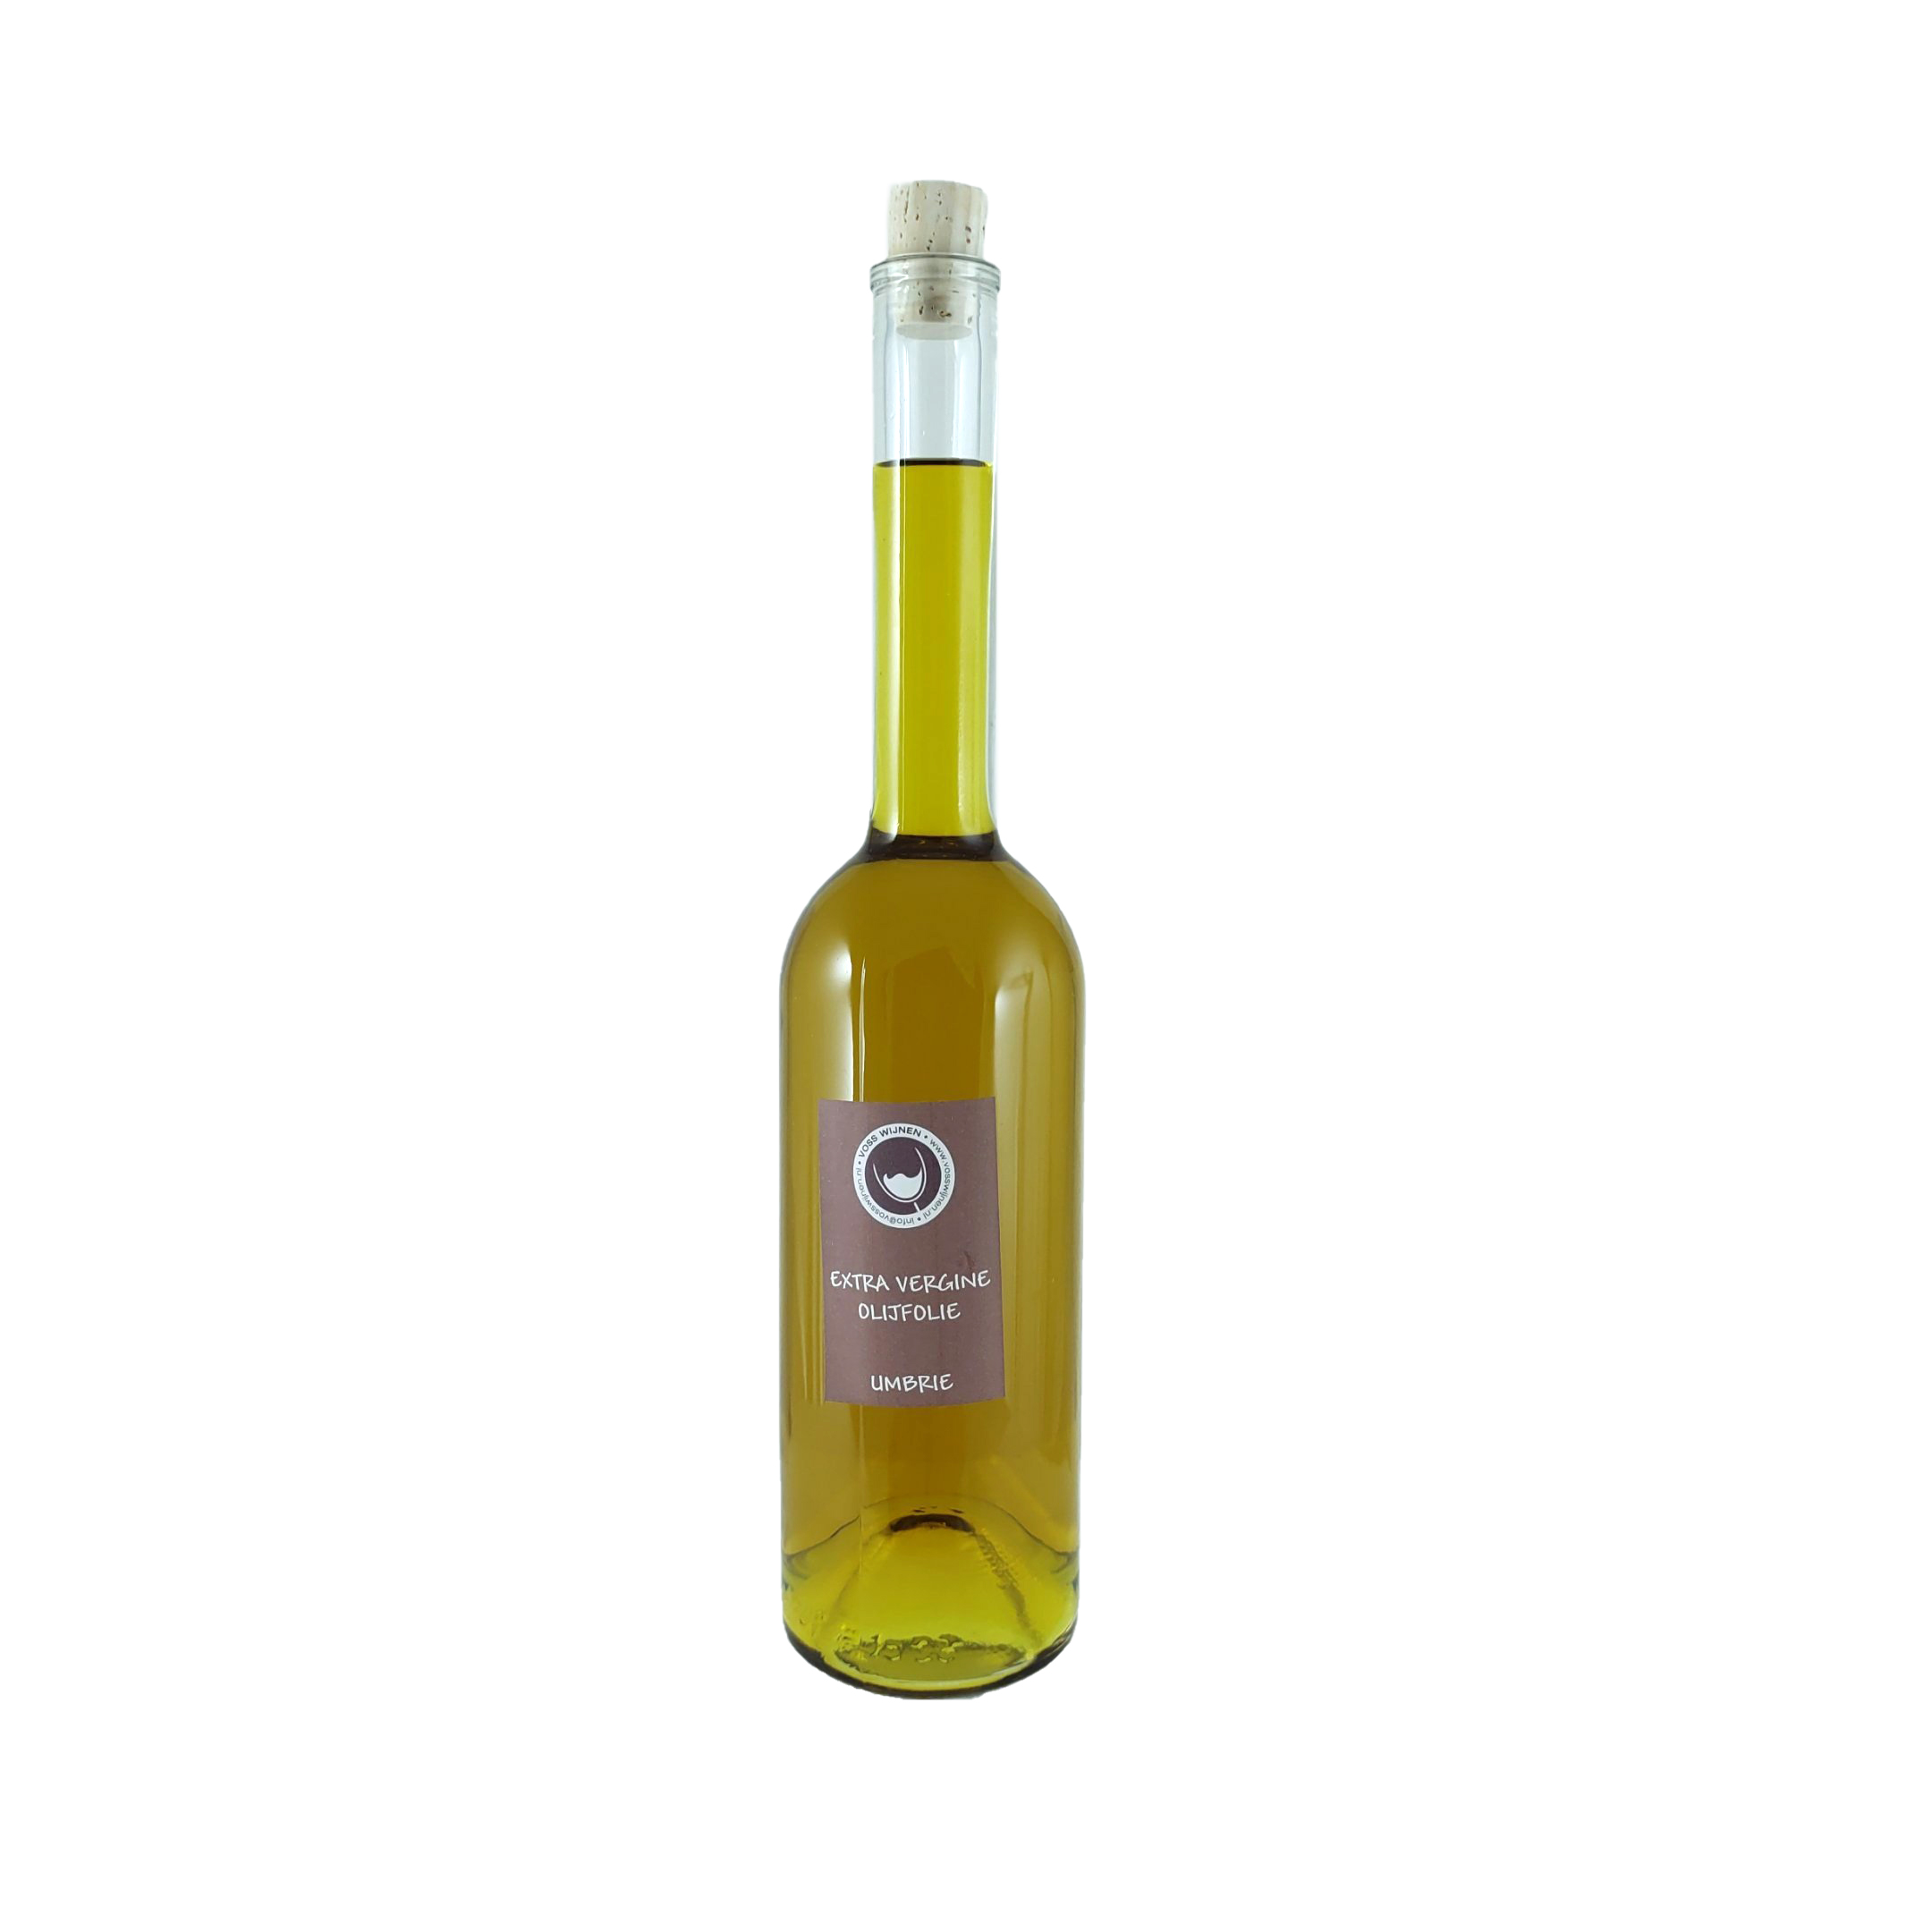 Umbrie extra vergine biologische olijfolie  500ml